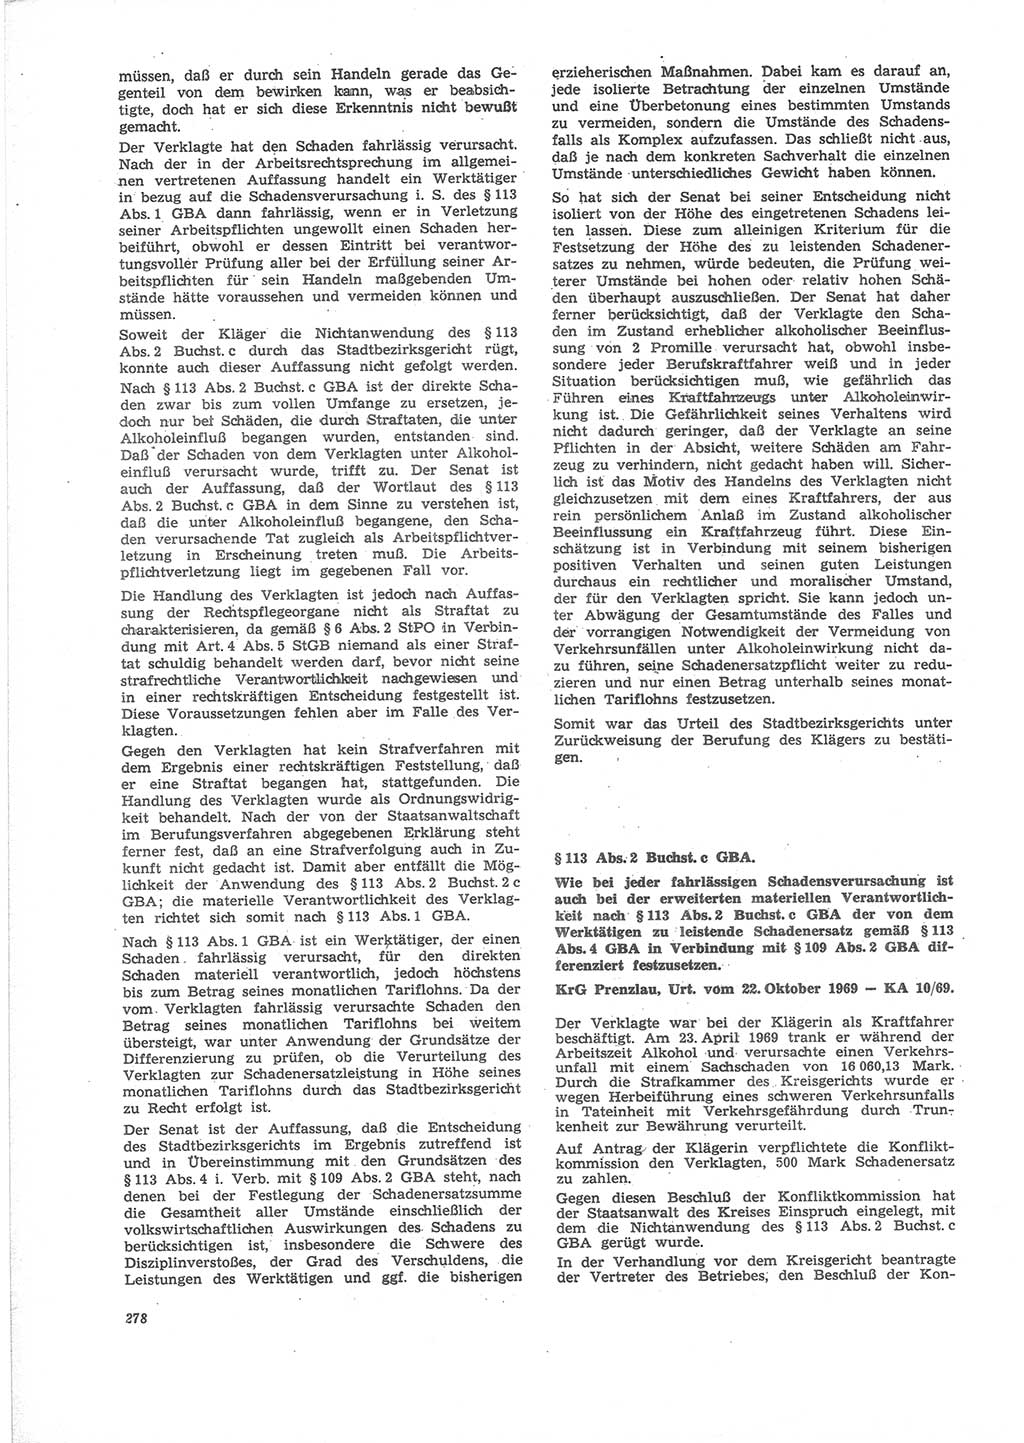 Neue Justiz (NJ), Zeitschrift für Recht und Rechtswissenschaft [Deutsche Demokratische Republik (DDR)], 24. Jahrgang 1970, Seite 278 (NJ DDR 1970, S. 278)